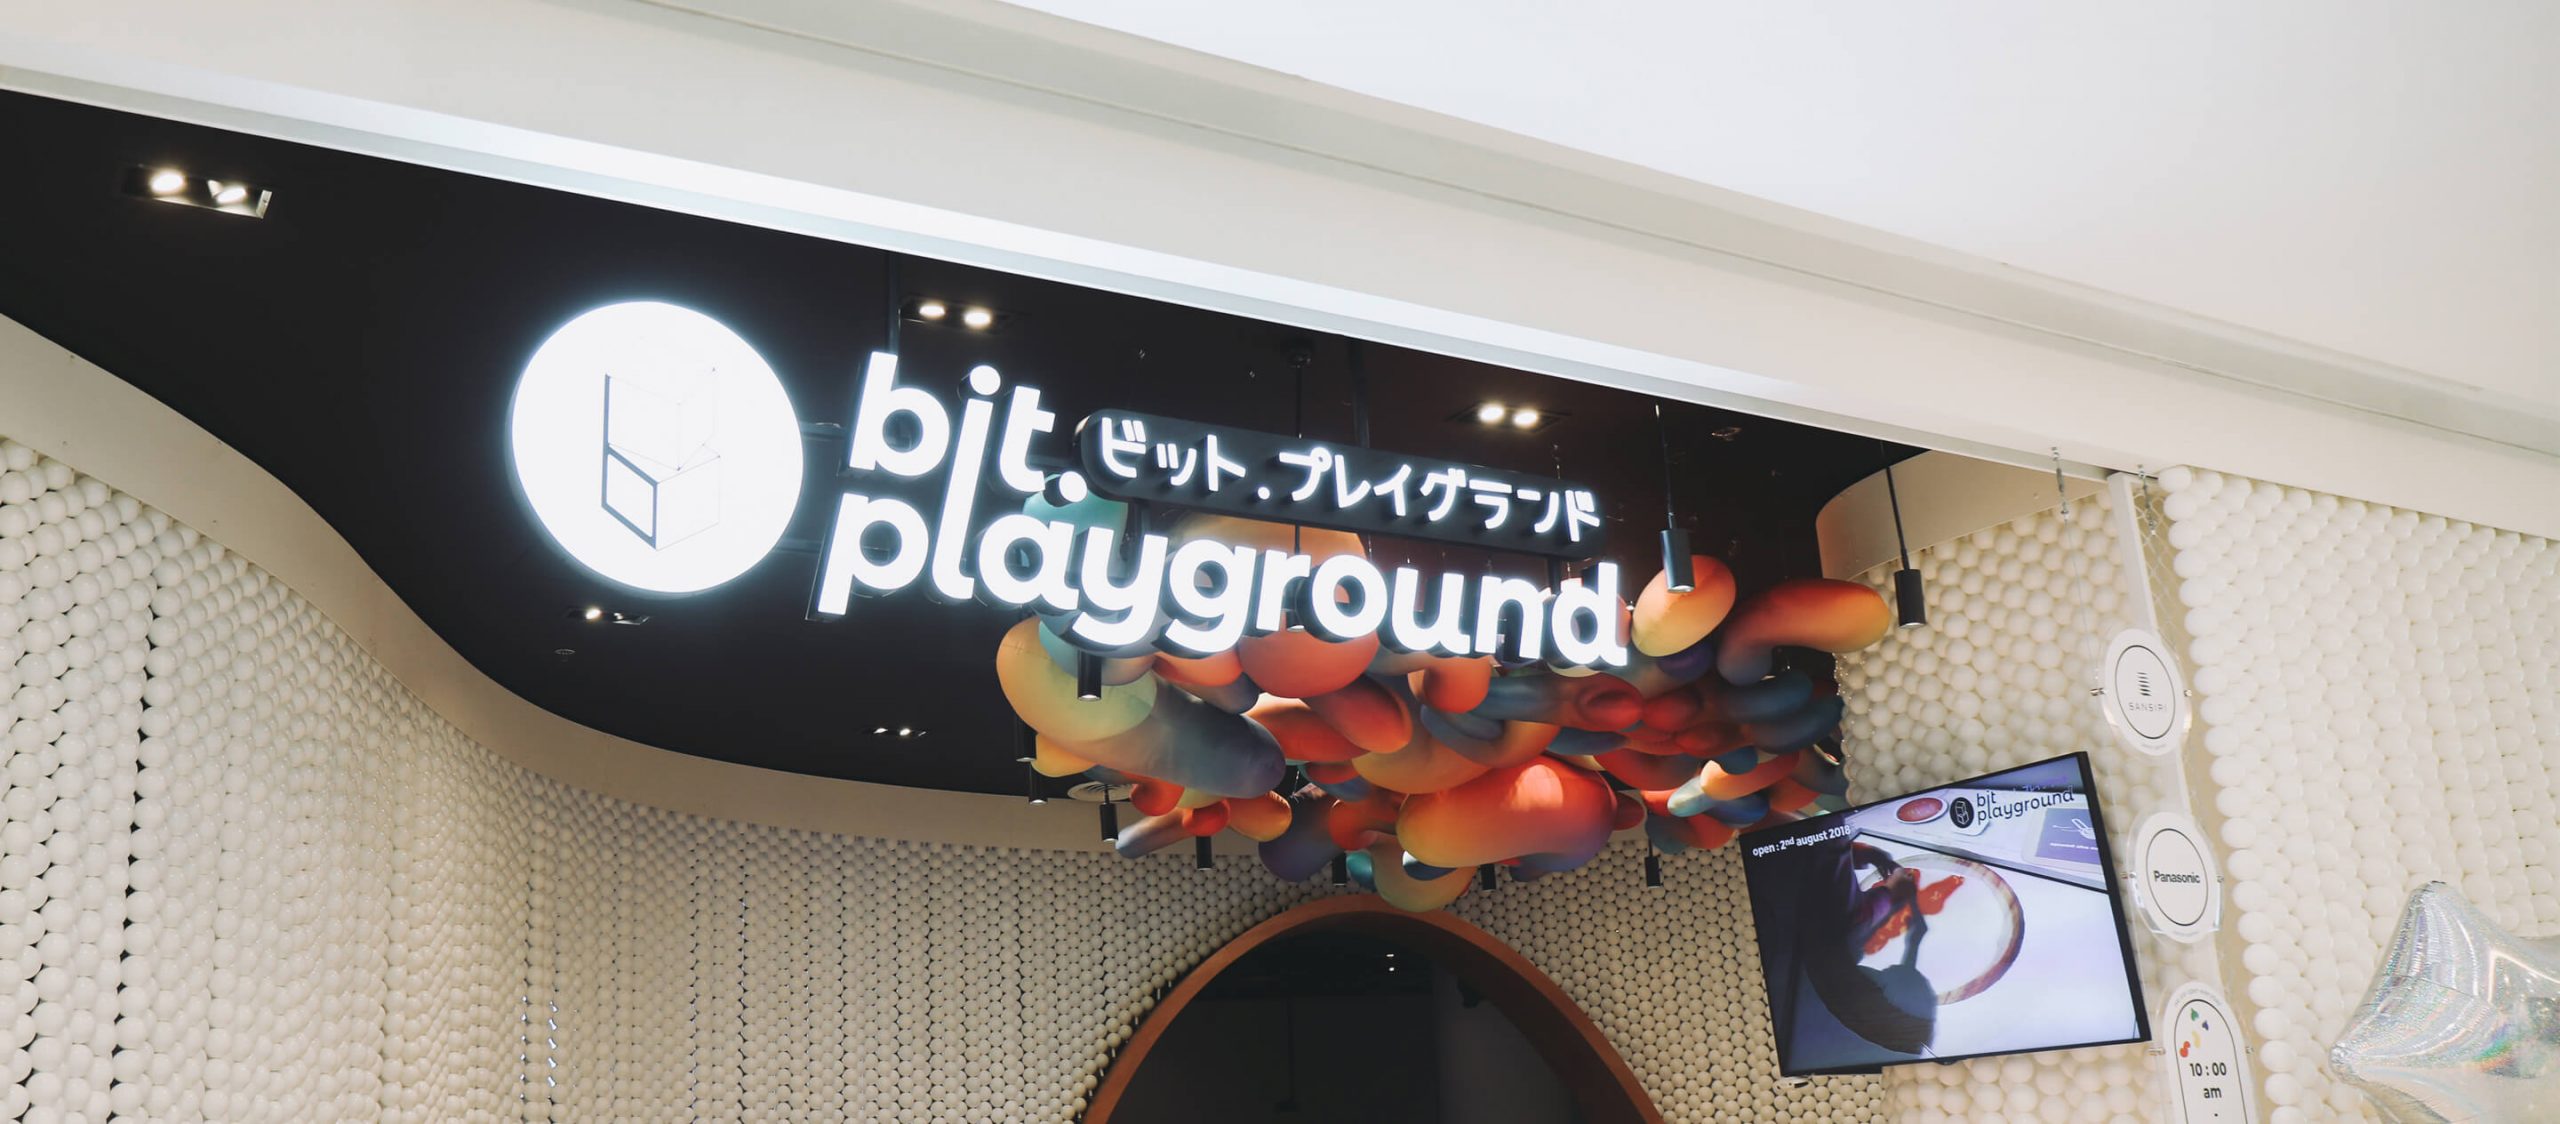 ‘Bit.Playground’ สวนสนุกที่ใช้เทคโนโลยีเสกจินตนาการวัยเด็กให้เป็นจริง